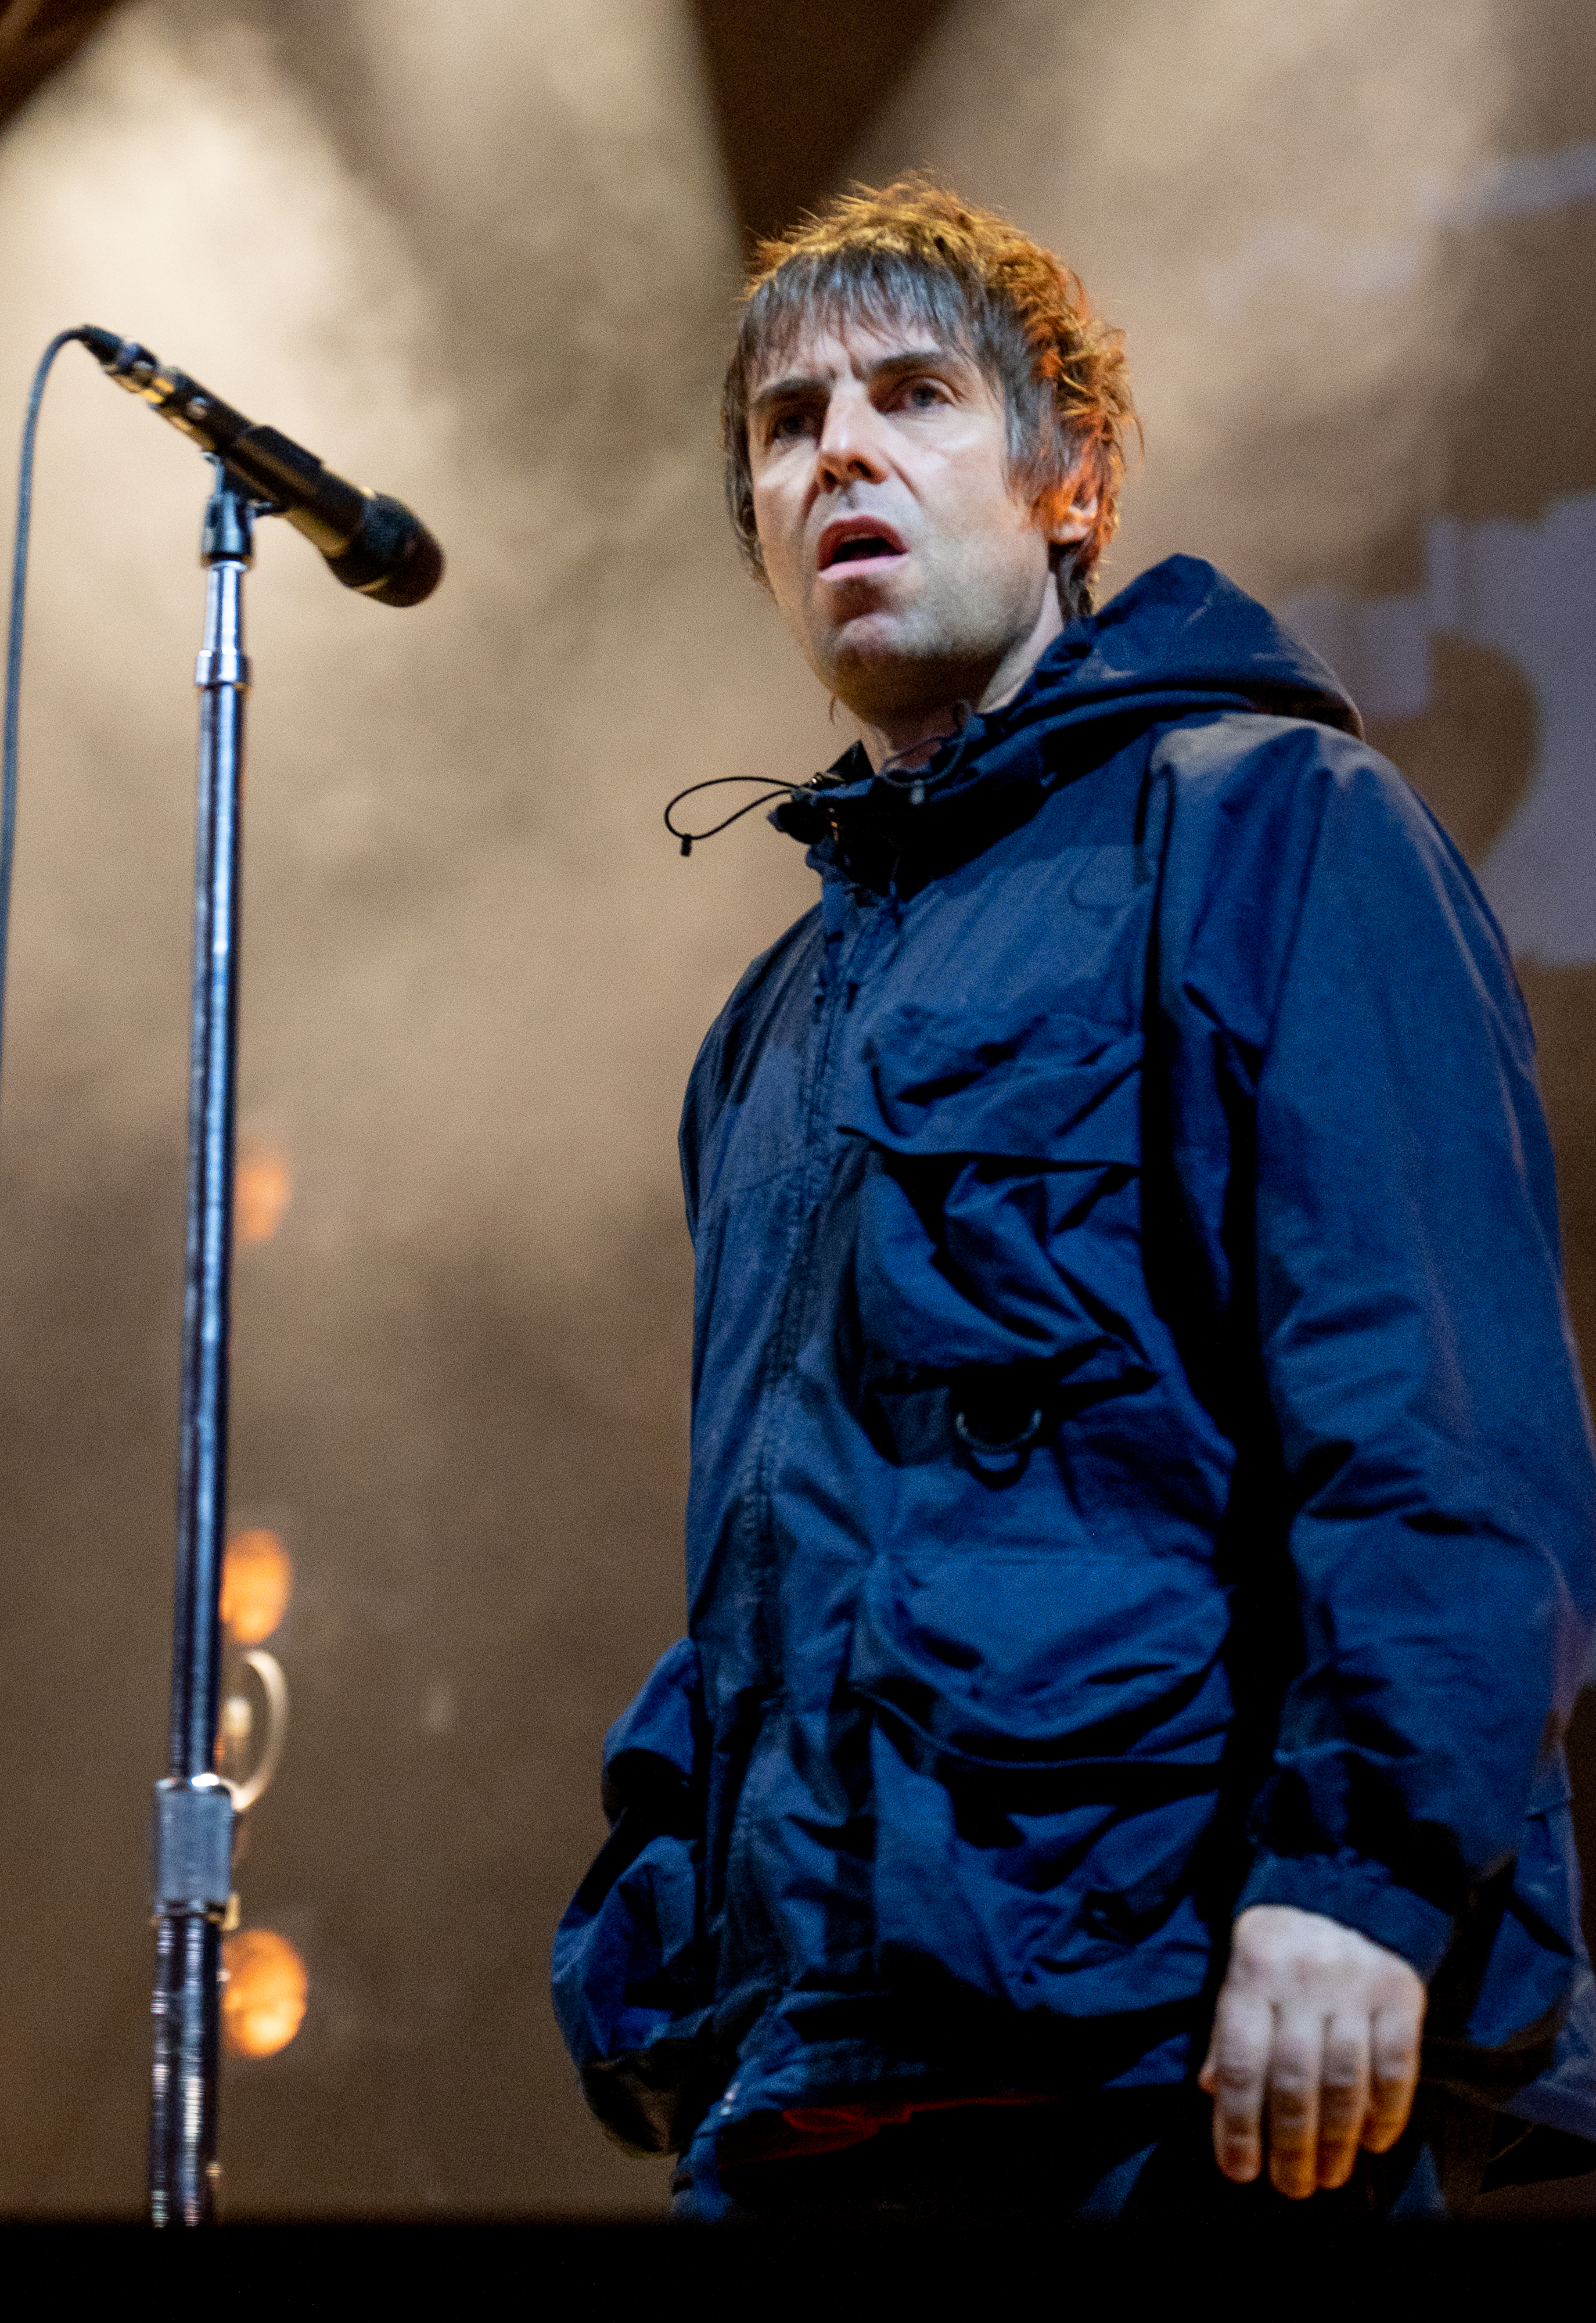 Liam Gallagher hat angekündigt, dass er eine Tour machen wird, bei der er die Debüt-LP von Oasis komplett aufführen wird